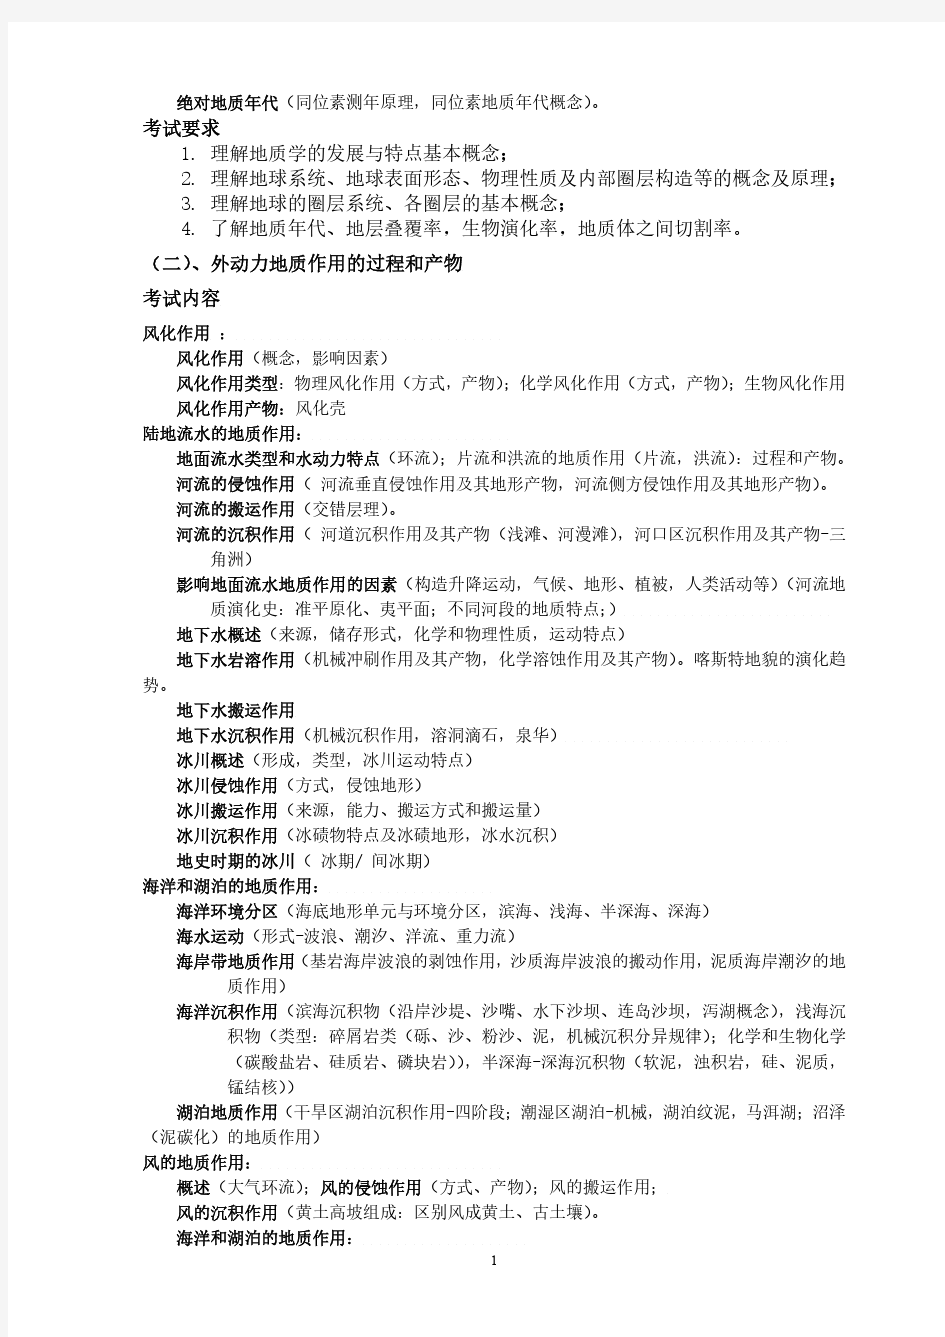 2020年中国地质大学(武汉)《普通地质学》考试大纲(适用于地质工程专业硕士生复试)